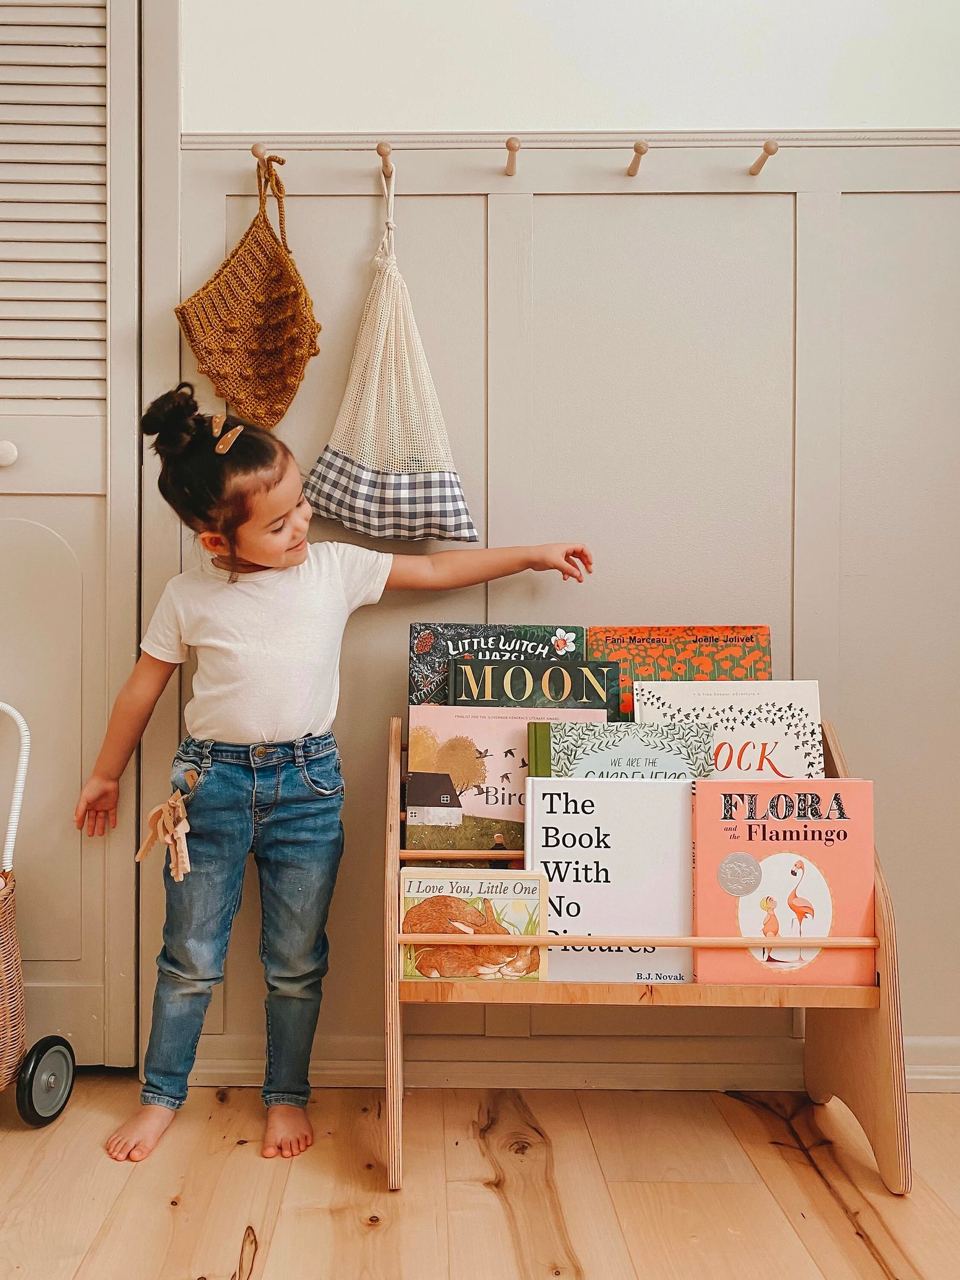 Montessori Bookshelf, Wooden Kids Bookcase,Baby Neutral Room Storage, Nursery Decor